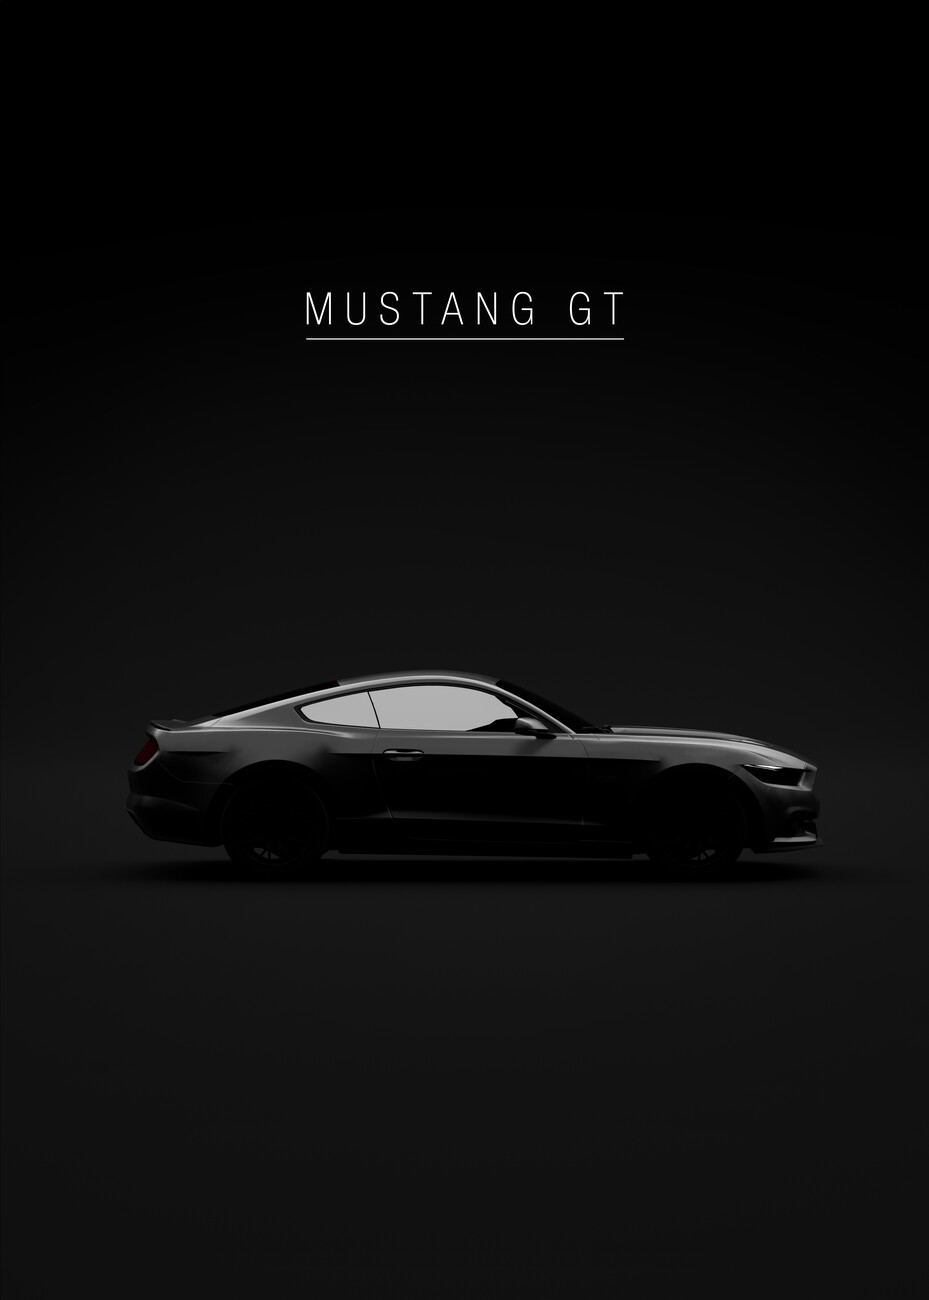 Bilde 2015 Mustang GT Merchandise | | Europosters Poster,